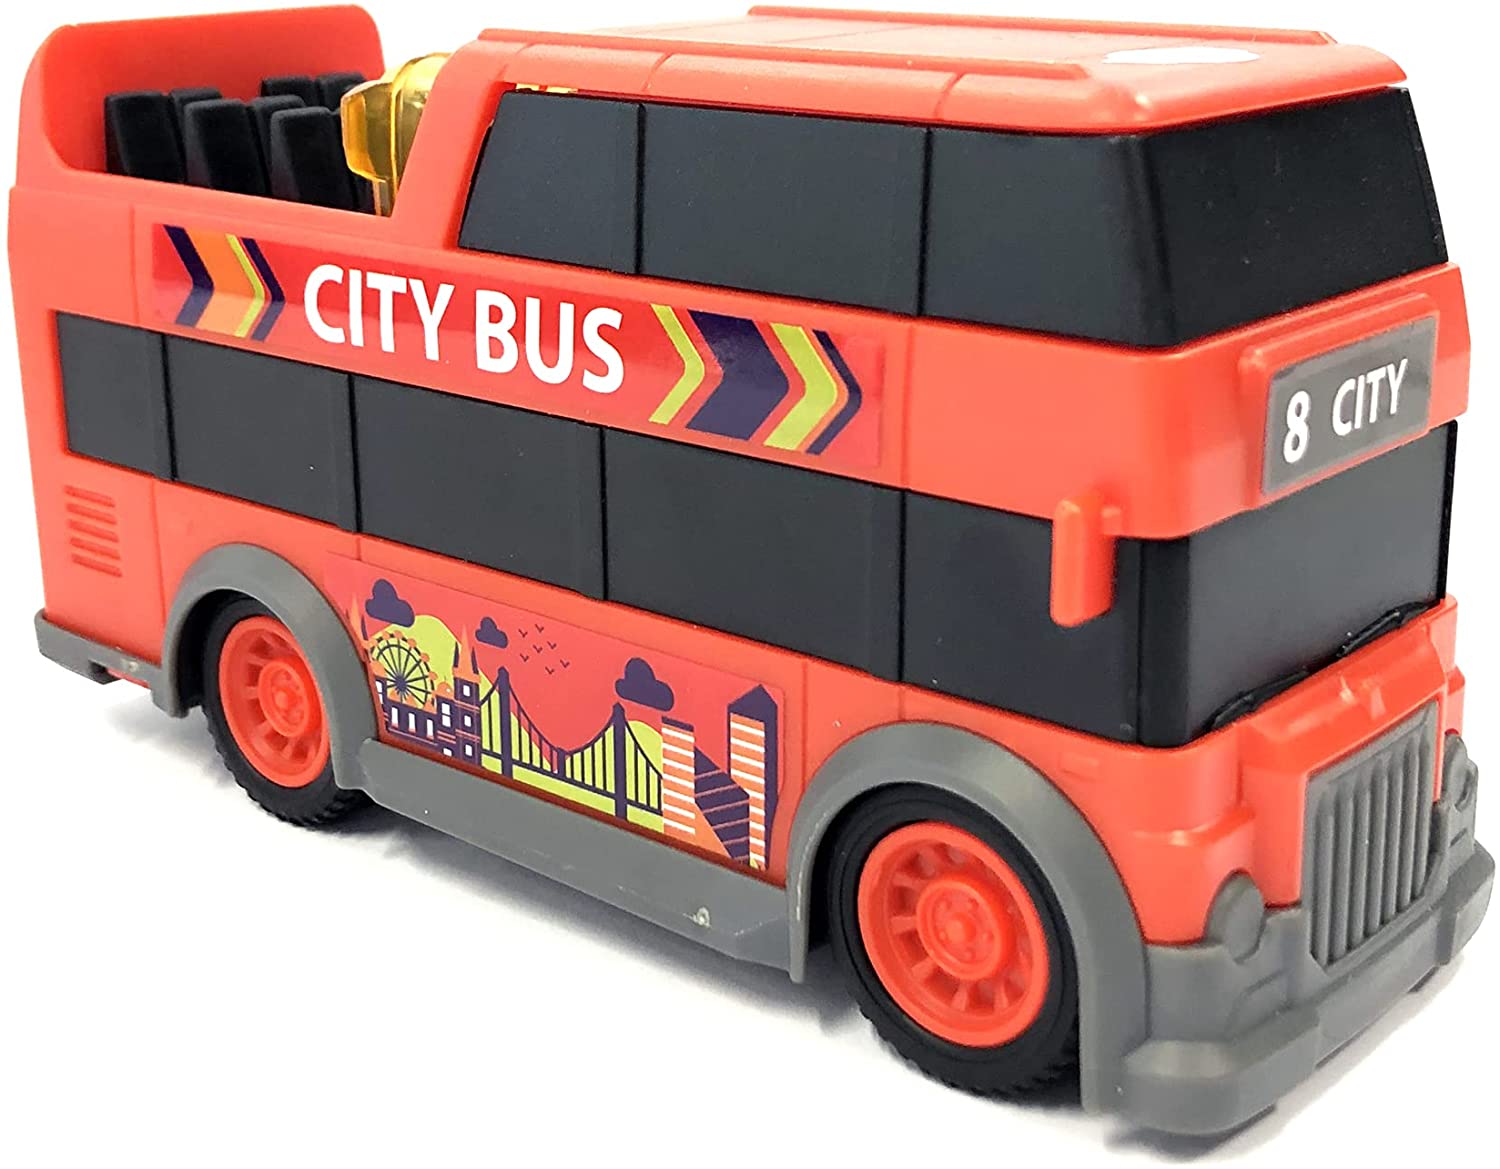 Masina - City Bus, 15 cm | Dickie Toys - 1